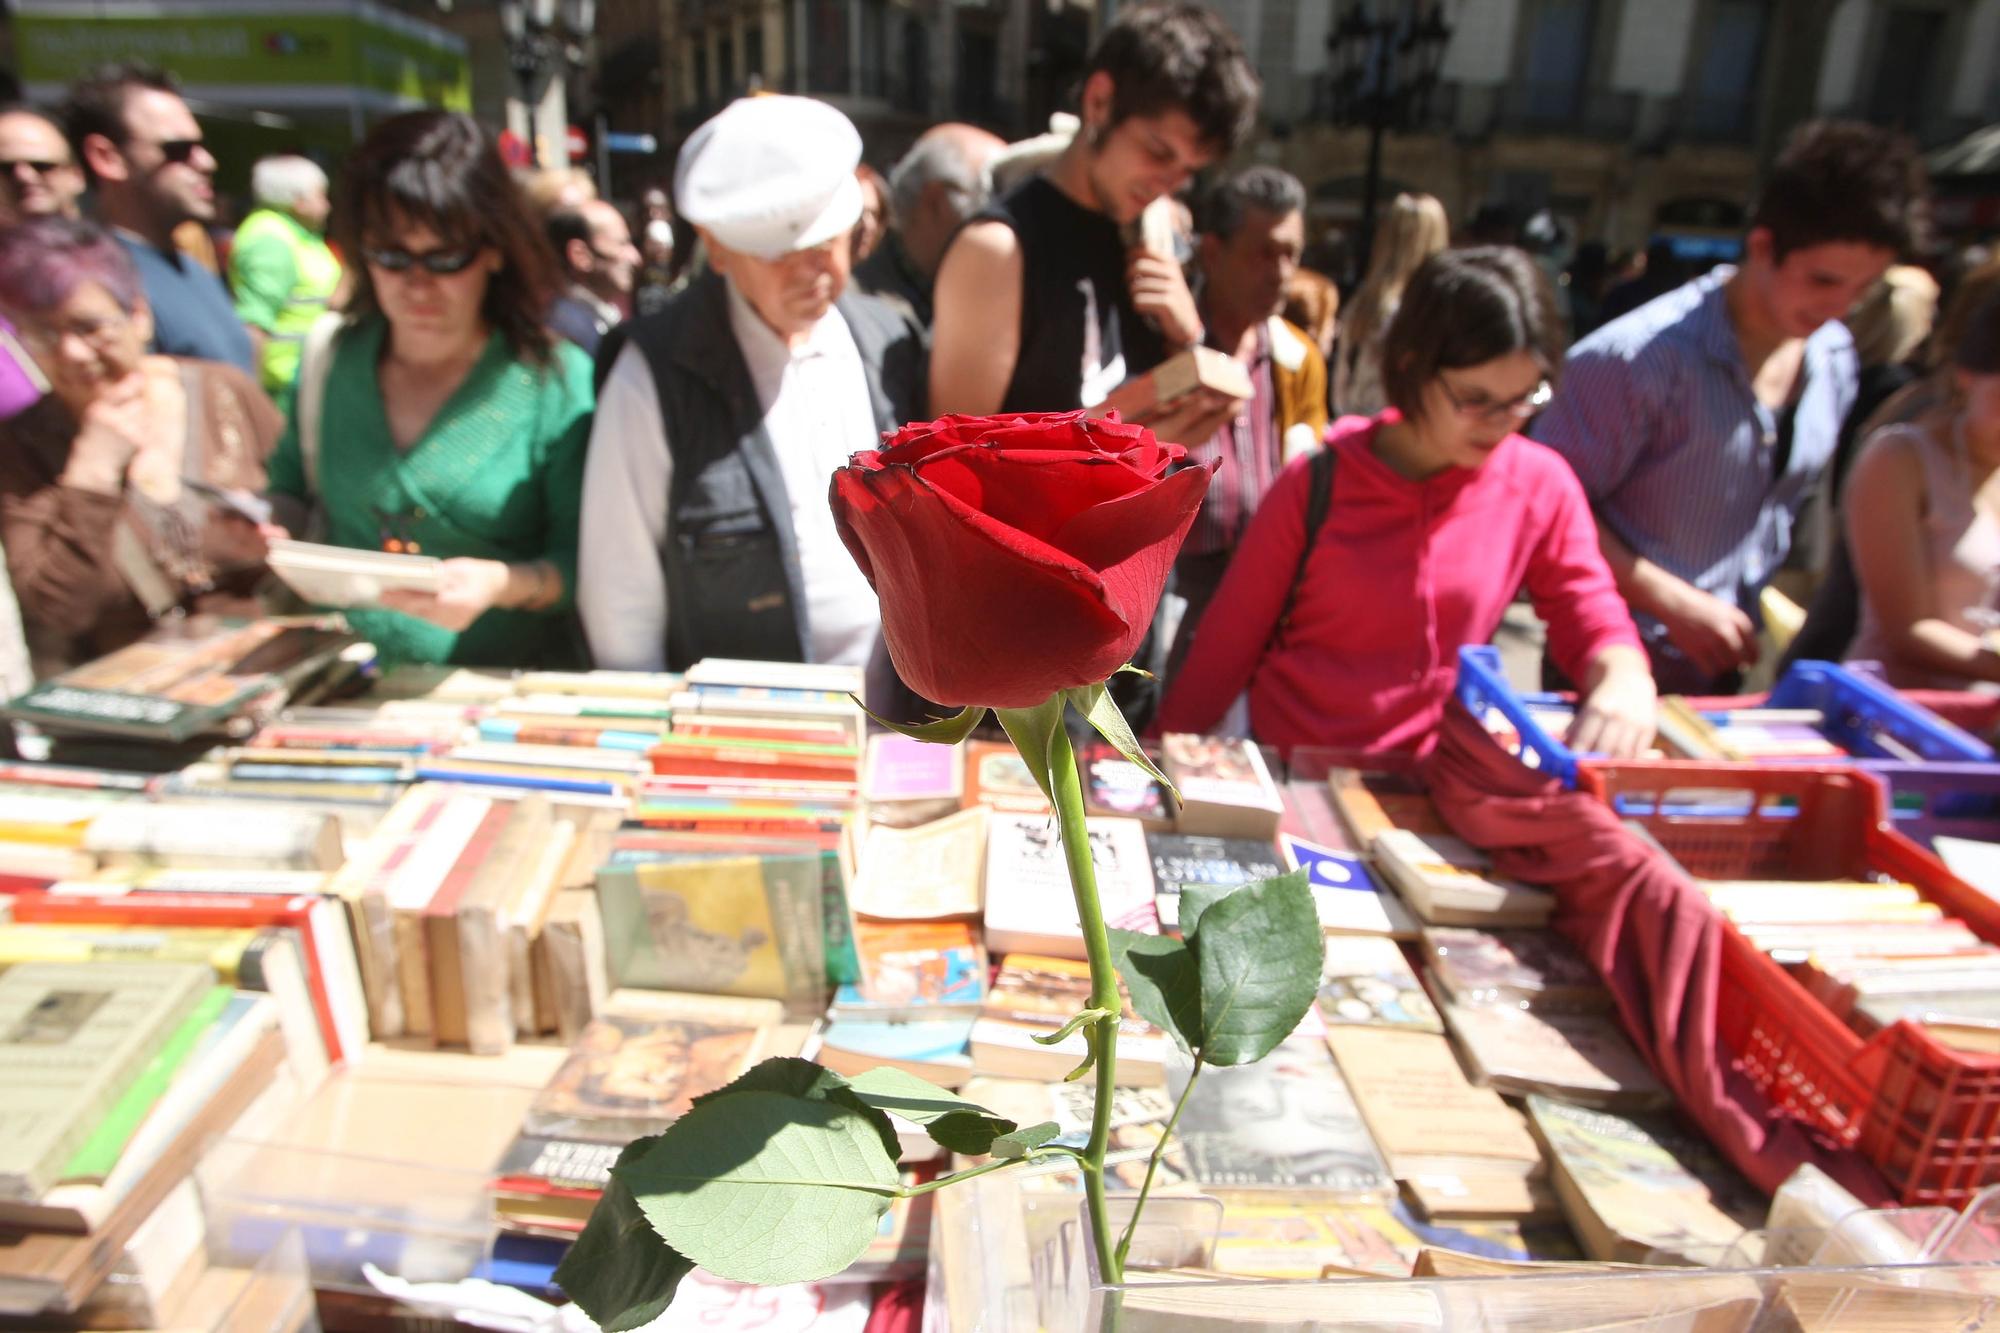 Una imagen de la celebración de Sant Jordi, la fiesta del libro, en Barcelona.